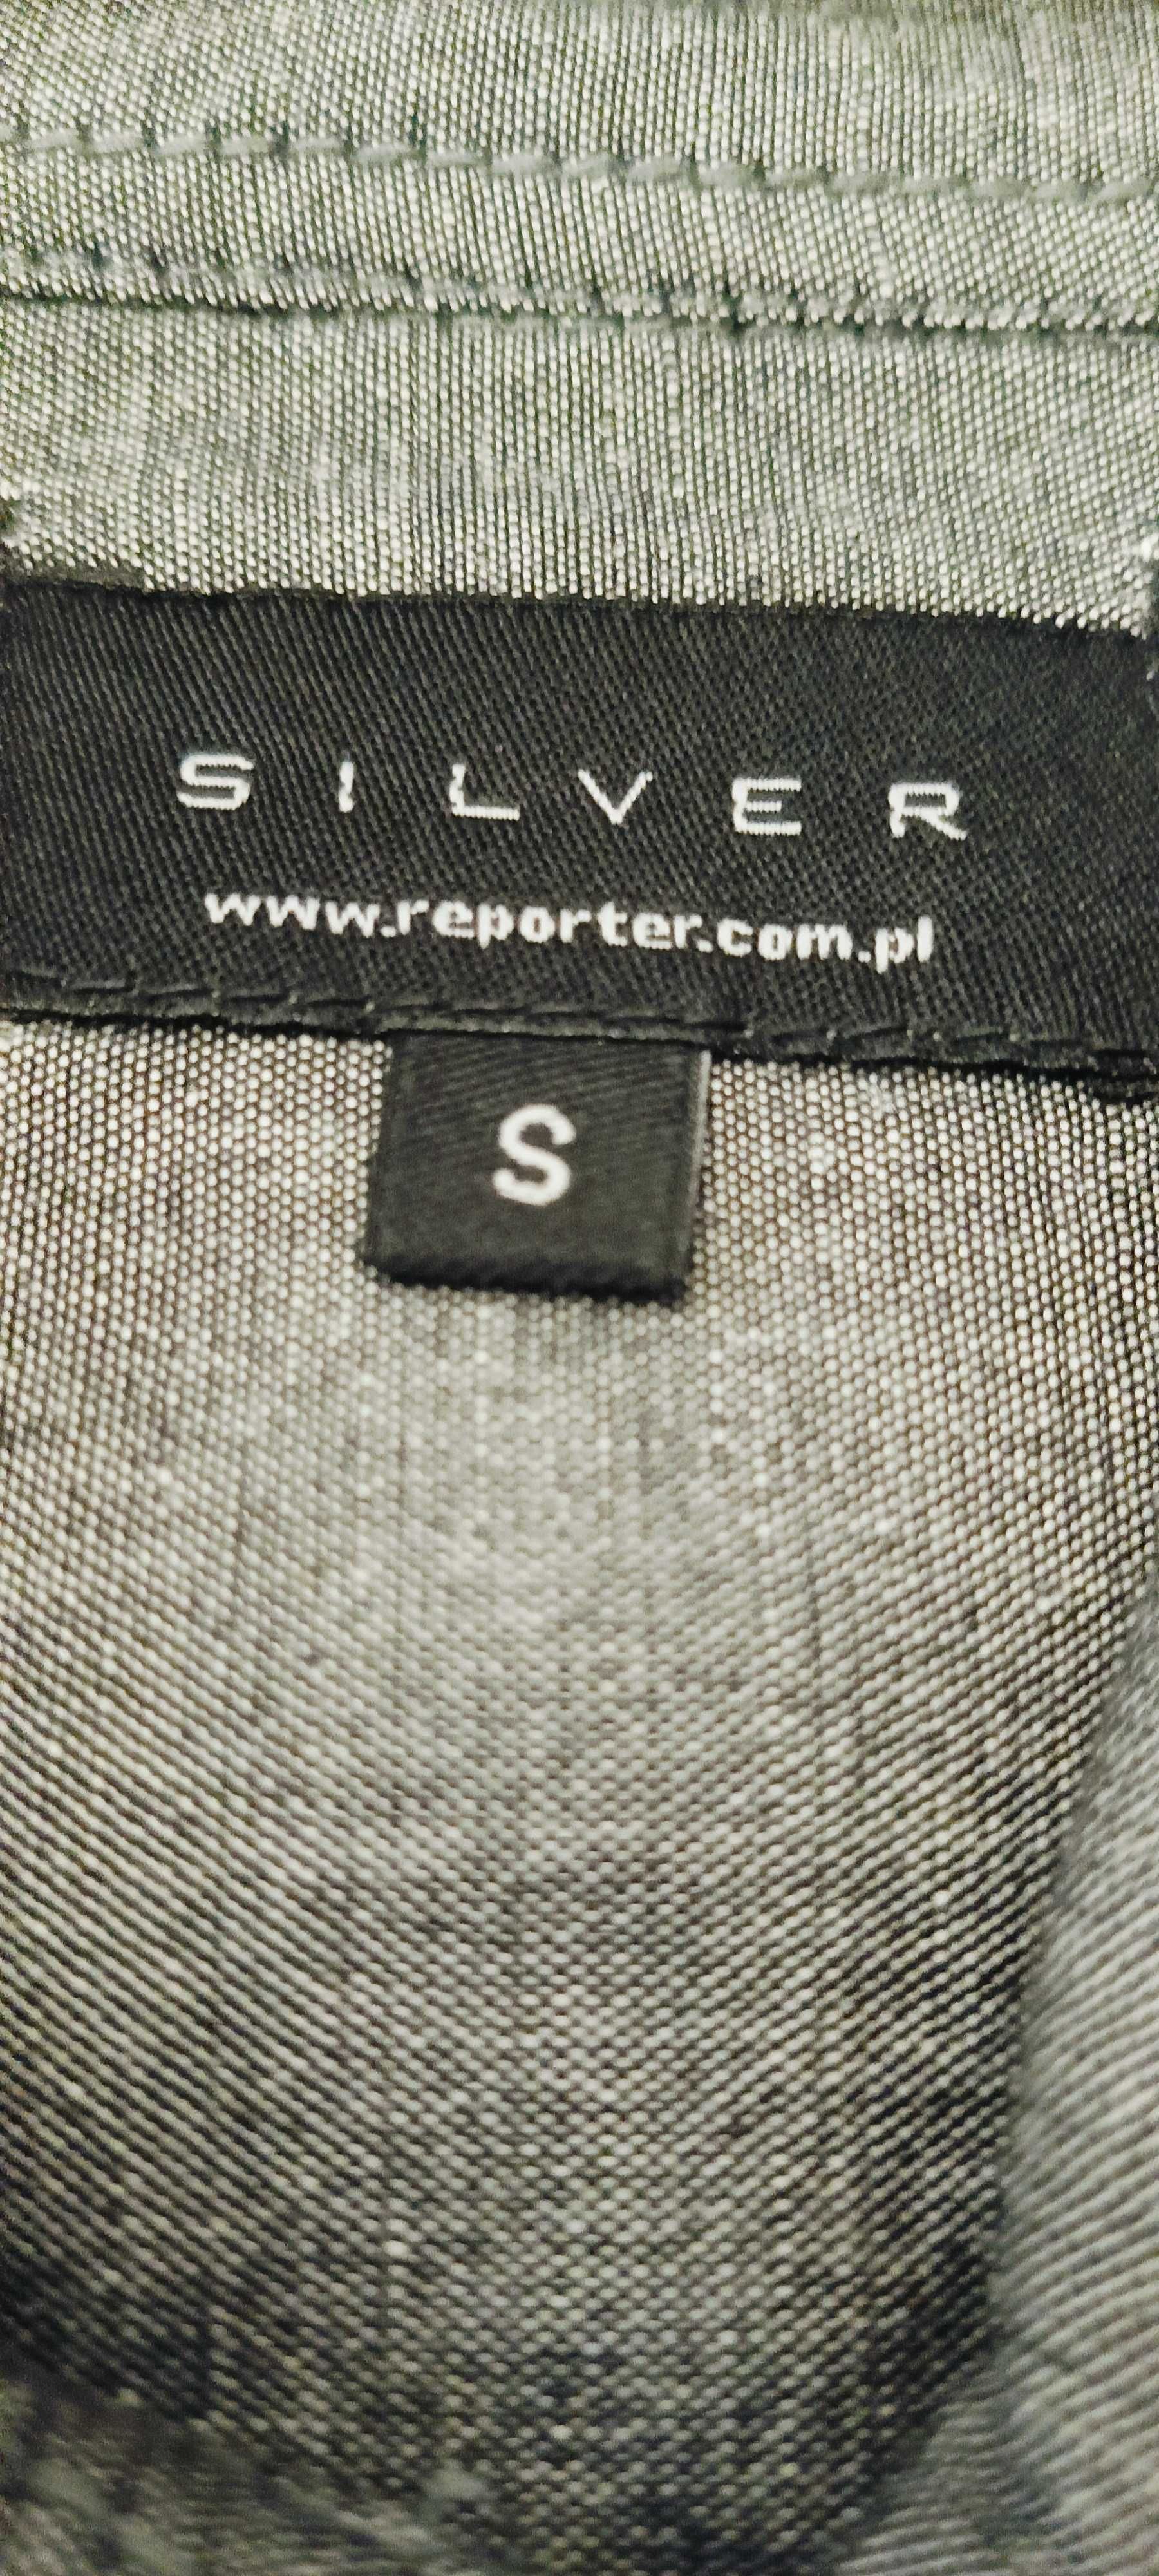 Szara koszula Silver by Reporter ze lnem rozm. S